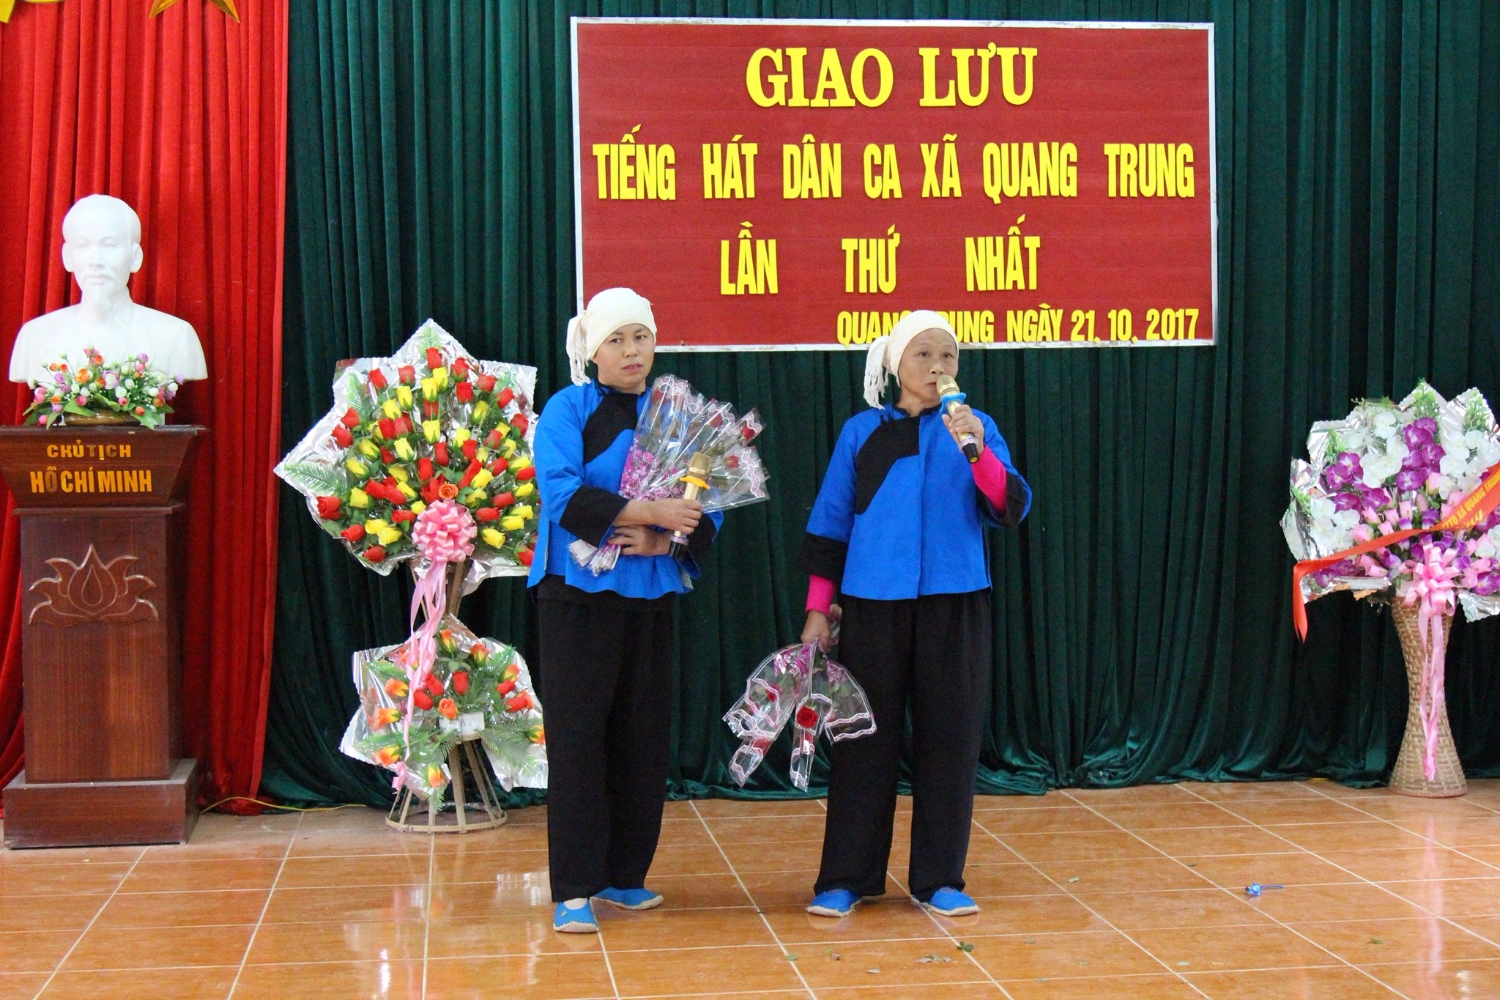 Hội LHPN xã Quang Trung huyện Trà Lĩnh  phối hợp tổ chức giao lưu tiếng hát dân ca